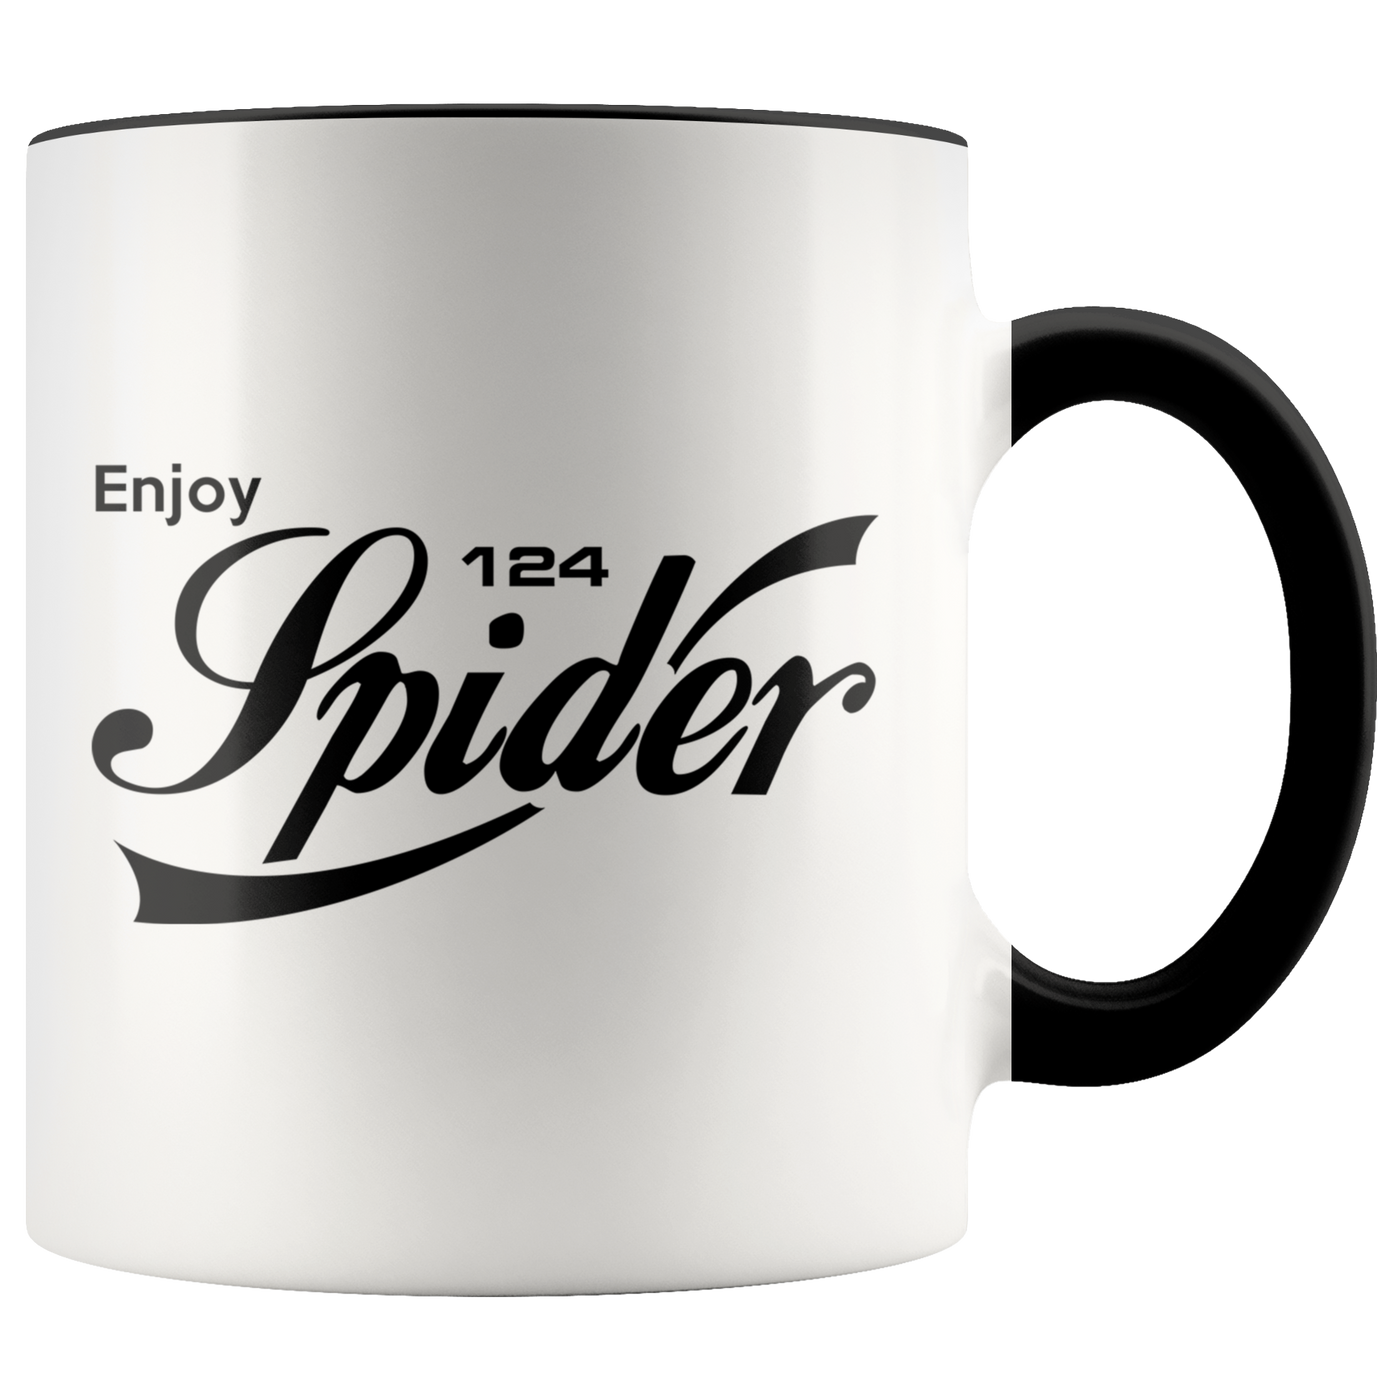 Enjoy 124 Spider Mug